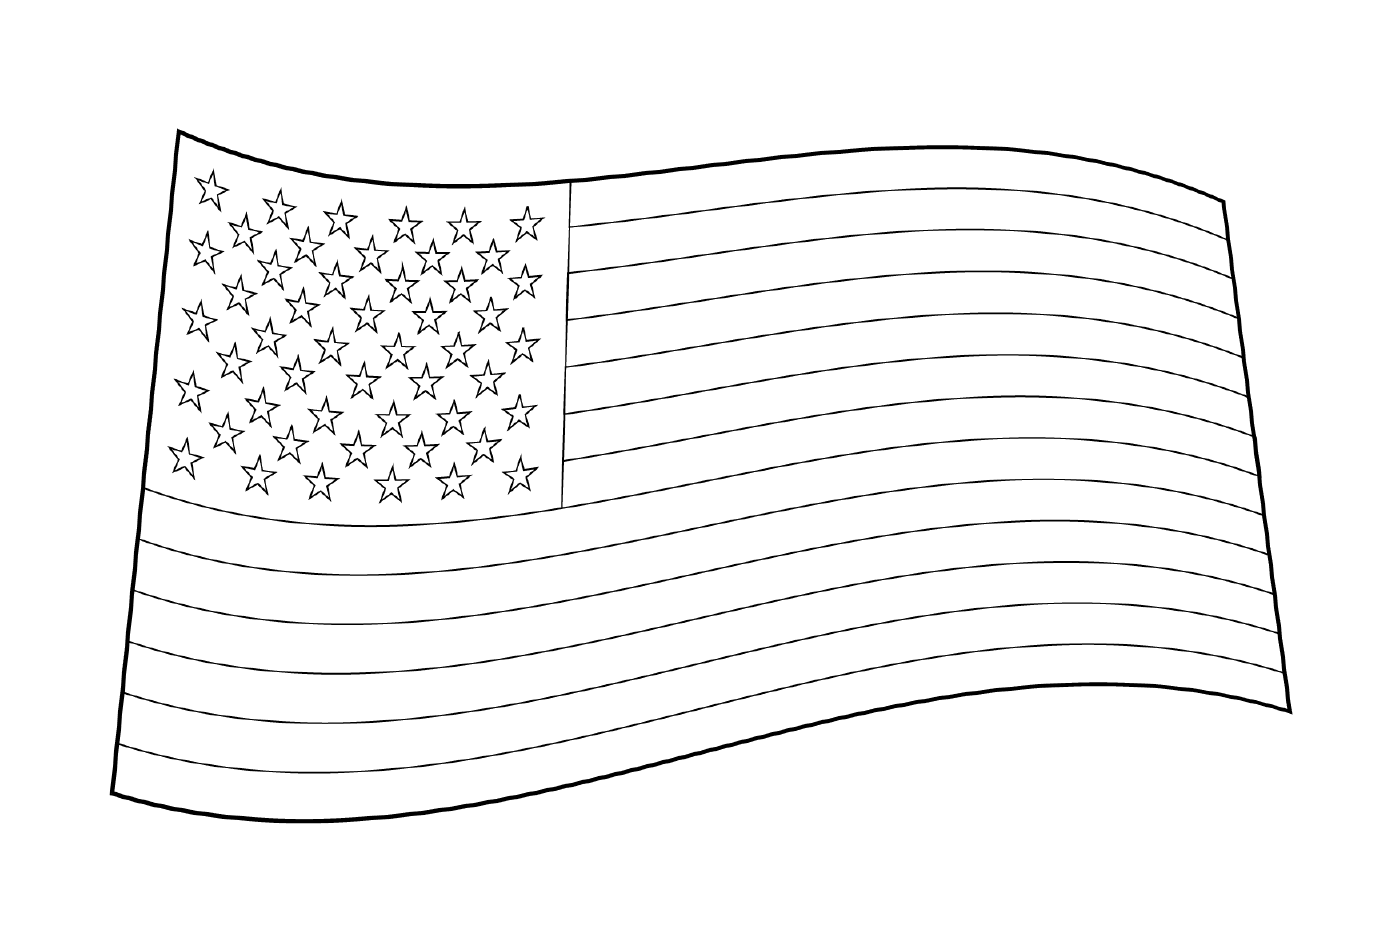  उत्तरी दिशा में तारों के साथ अमरीकी झंडा 